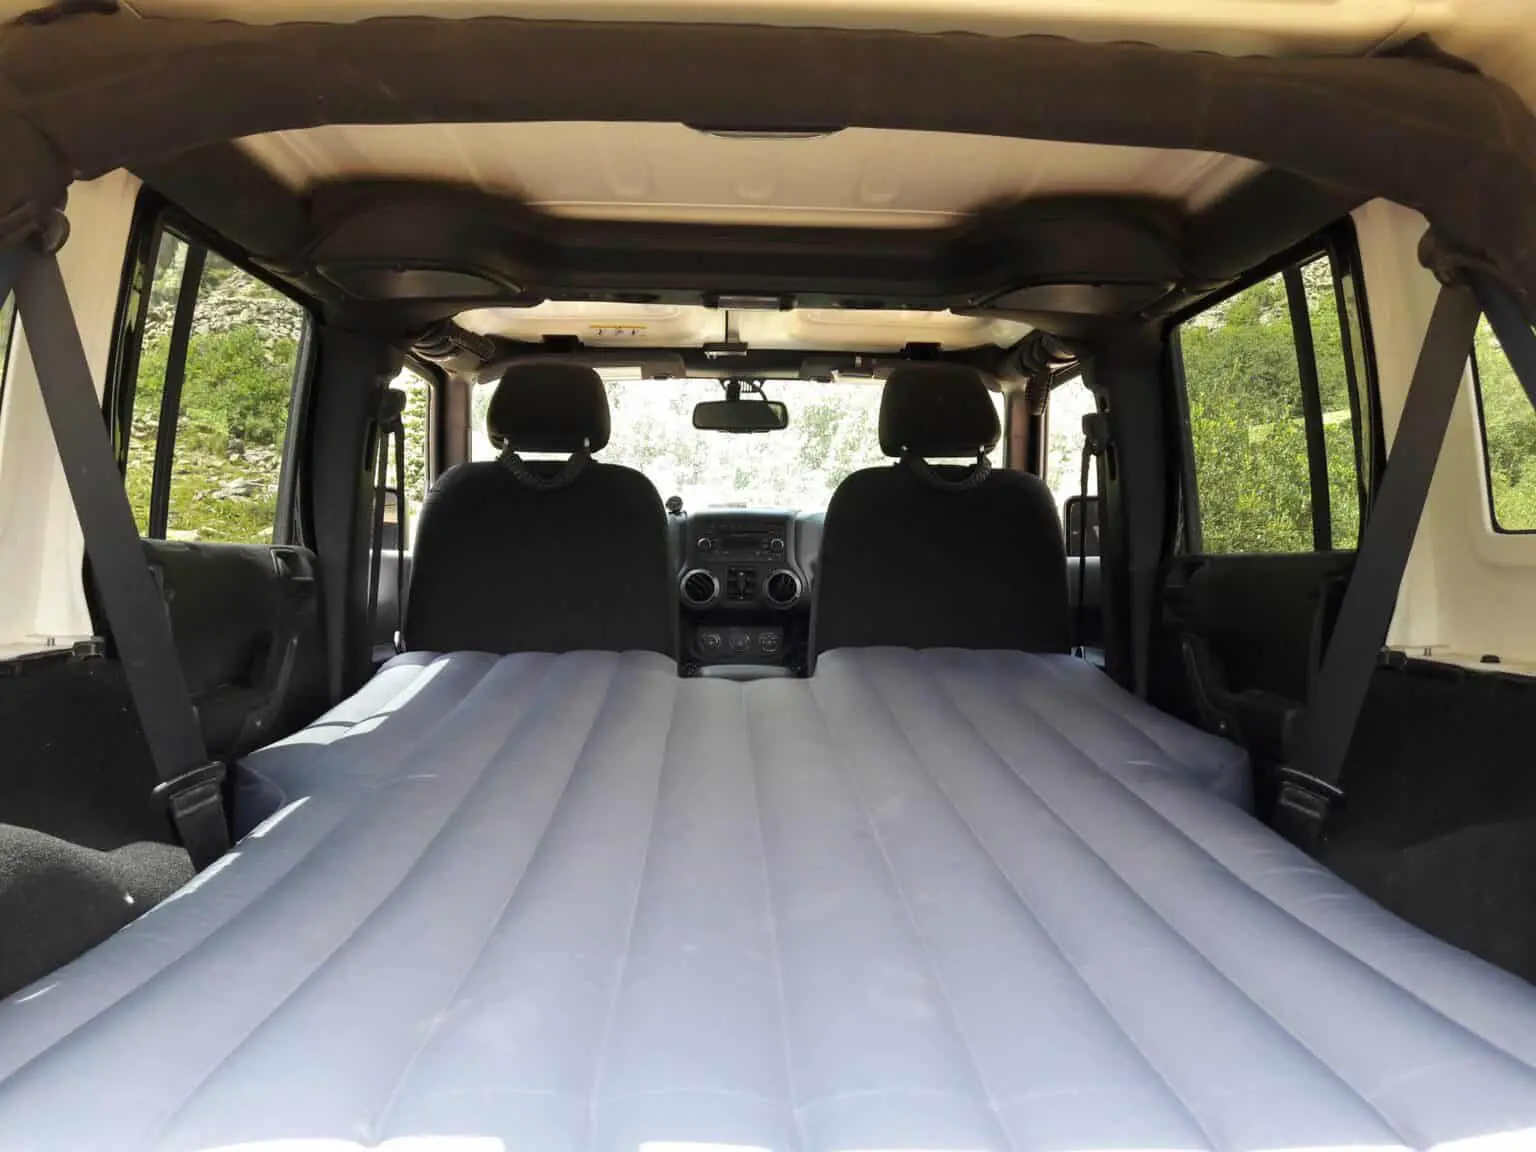 fitting queen mattress in jeep wrangler 2 door